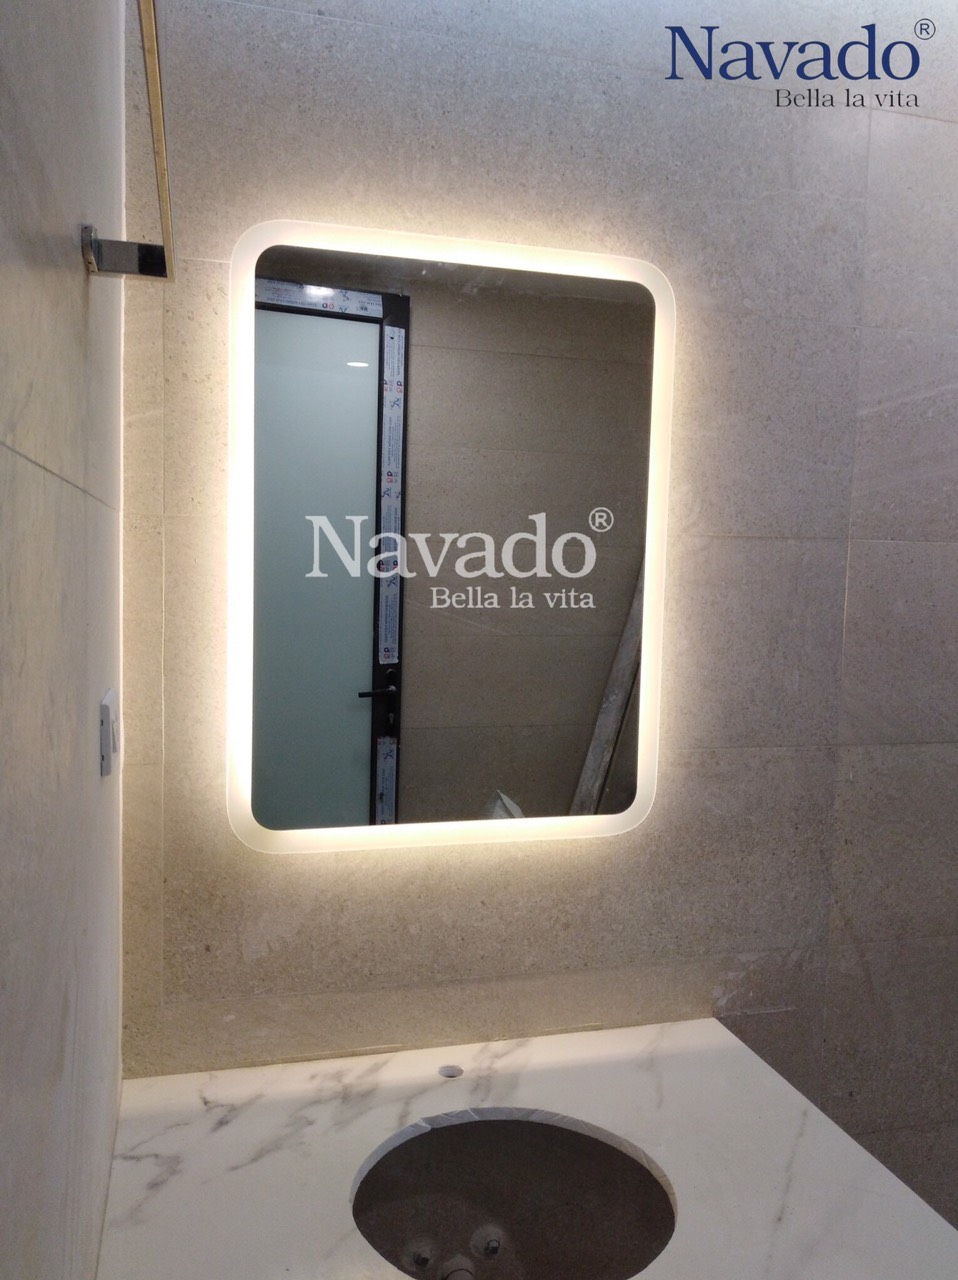 Gương phòng tắm đèn led hắt sáng mang đến cho bạn sự kết hợp hoàn hảo giữa chức năng và thẩm mỹ. Nó không chỉ giúp bạn có một không gian tắm rực rỡ, mà còn giúp cho khả năng trang trí của bạn trở nên phong phú hơn. Xem hình ảnh để tìm hiểu thêm!